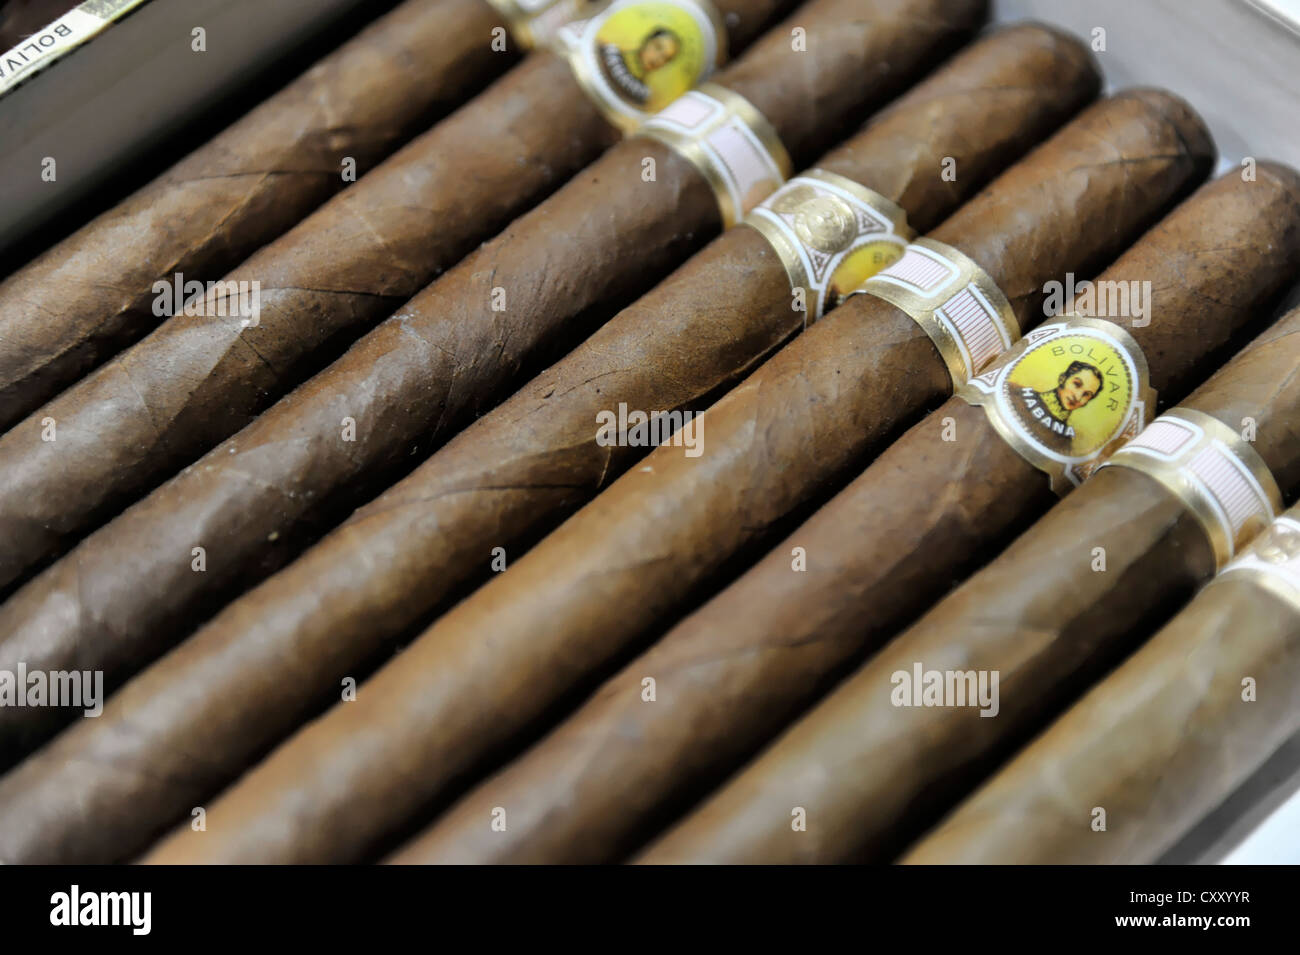 Marque de cigare Banque de photographies et d'images à haute résolution -  Alamy